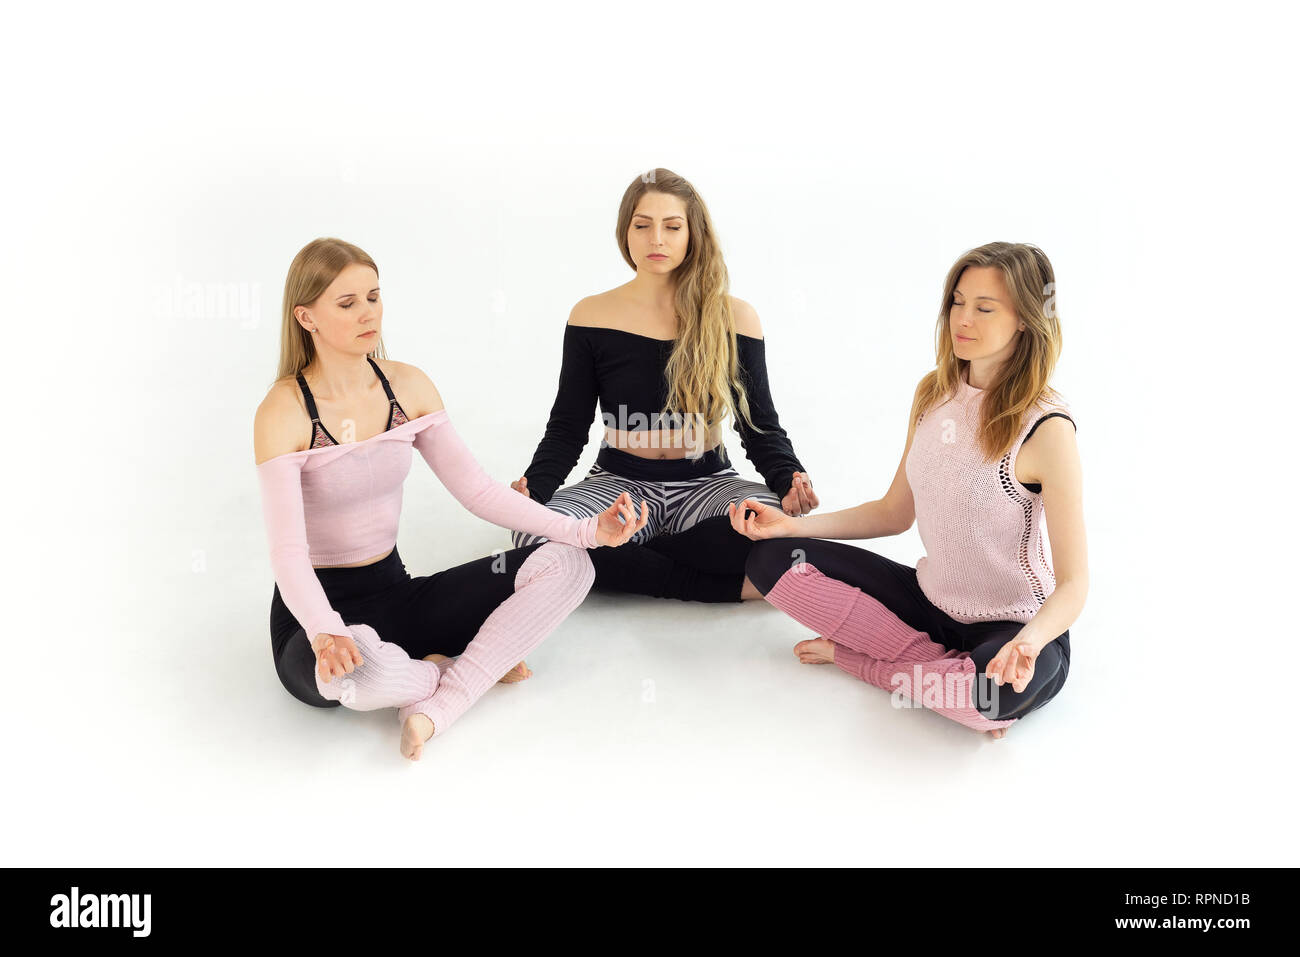 Gruppe junge schöne Mädchen von drei Menschen, die Yoga, Zen, Meditation mit geschlossenen Augen. Weißer Hintergrund Stockfoto